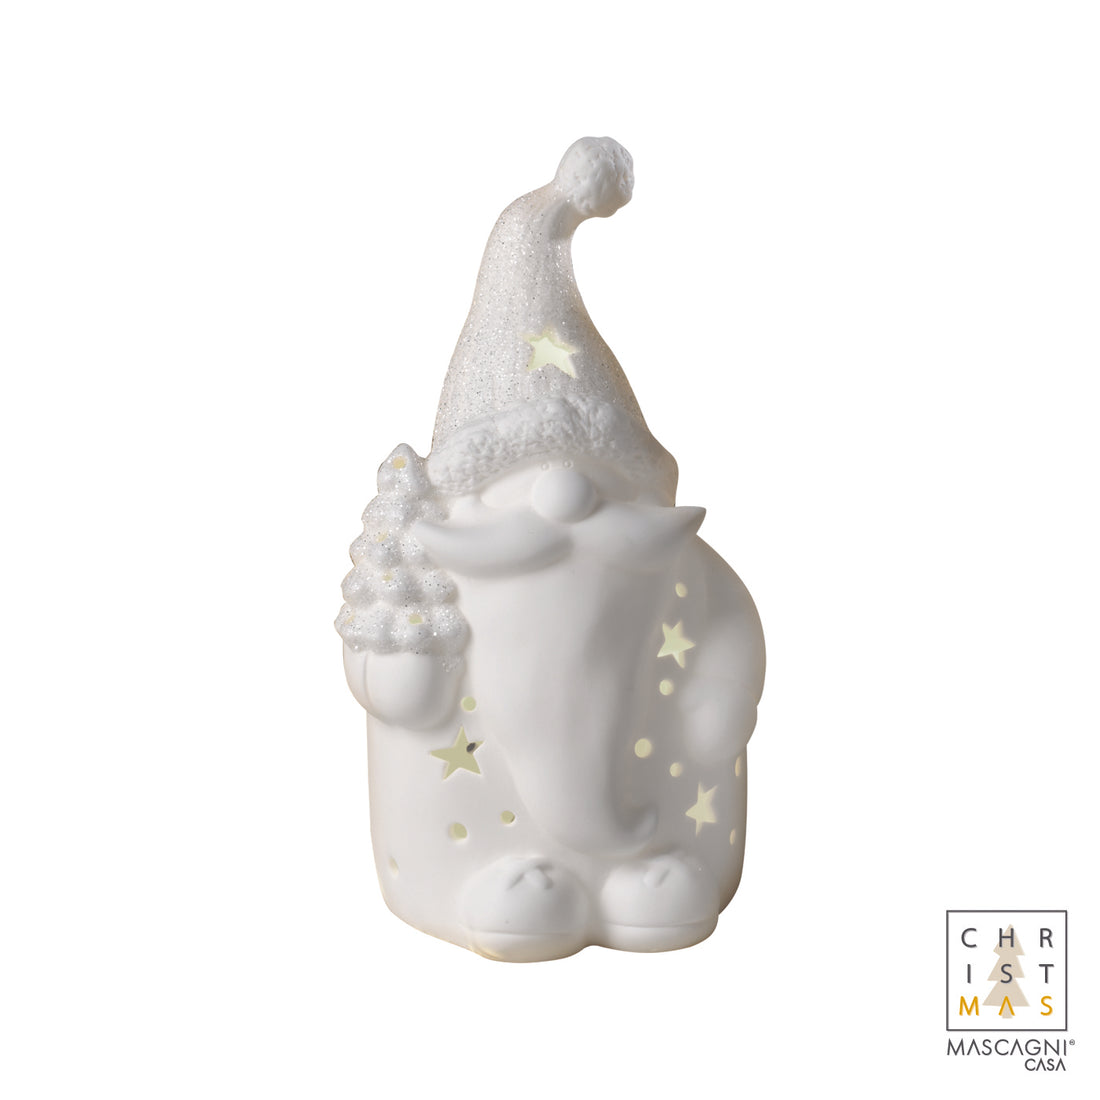 MASCAGNI CASA - Babbo Natale LED Statuina Decorazione Natalizia Bianca 15,5 cm Ceramica